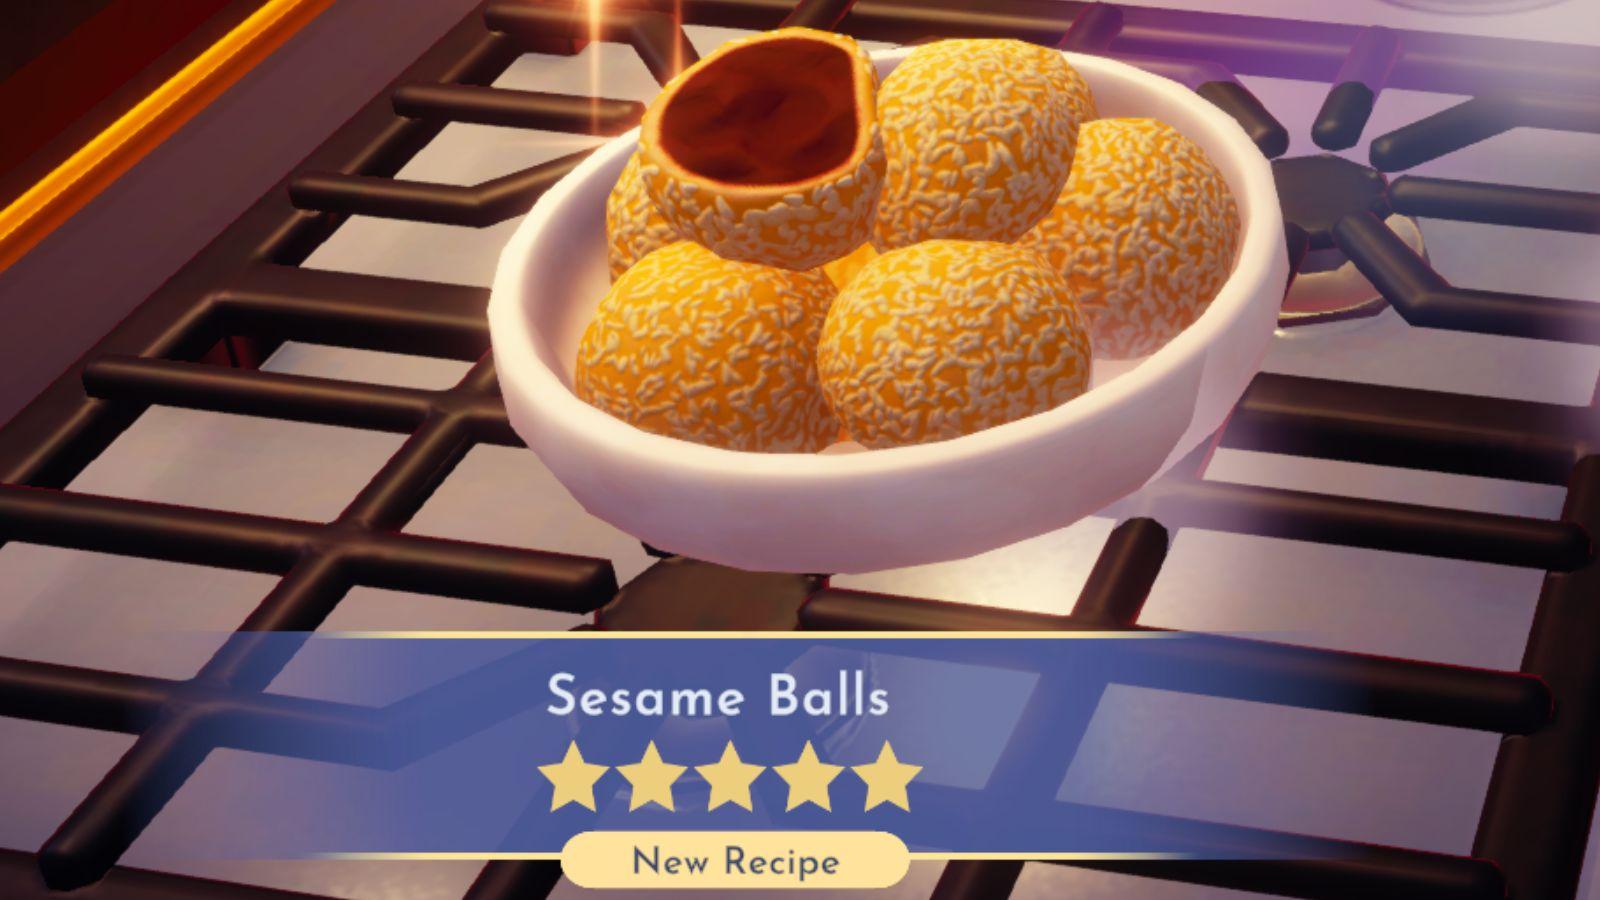 Disney Dreamlight Valley Sesame Balls recipe